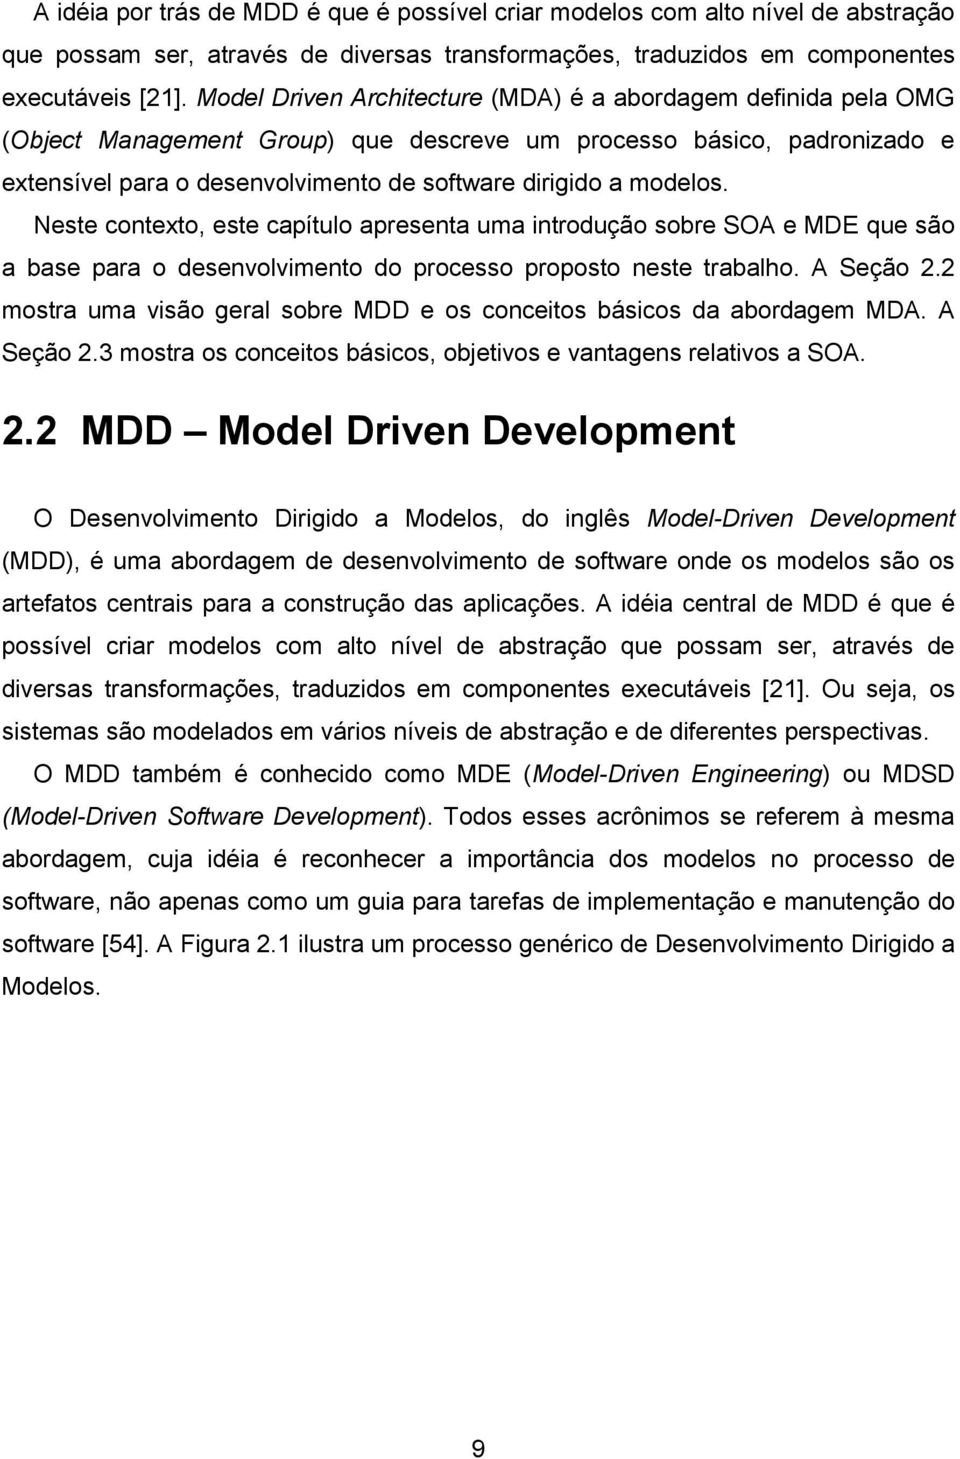 modelos. Neste contexto, este capítulo apresenta uma introdução sobre SOA e MDE que são a base para o desenvolvimento do processo proposto neste trabalho. A Seção 2.